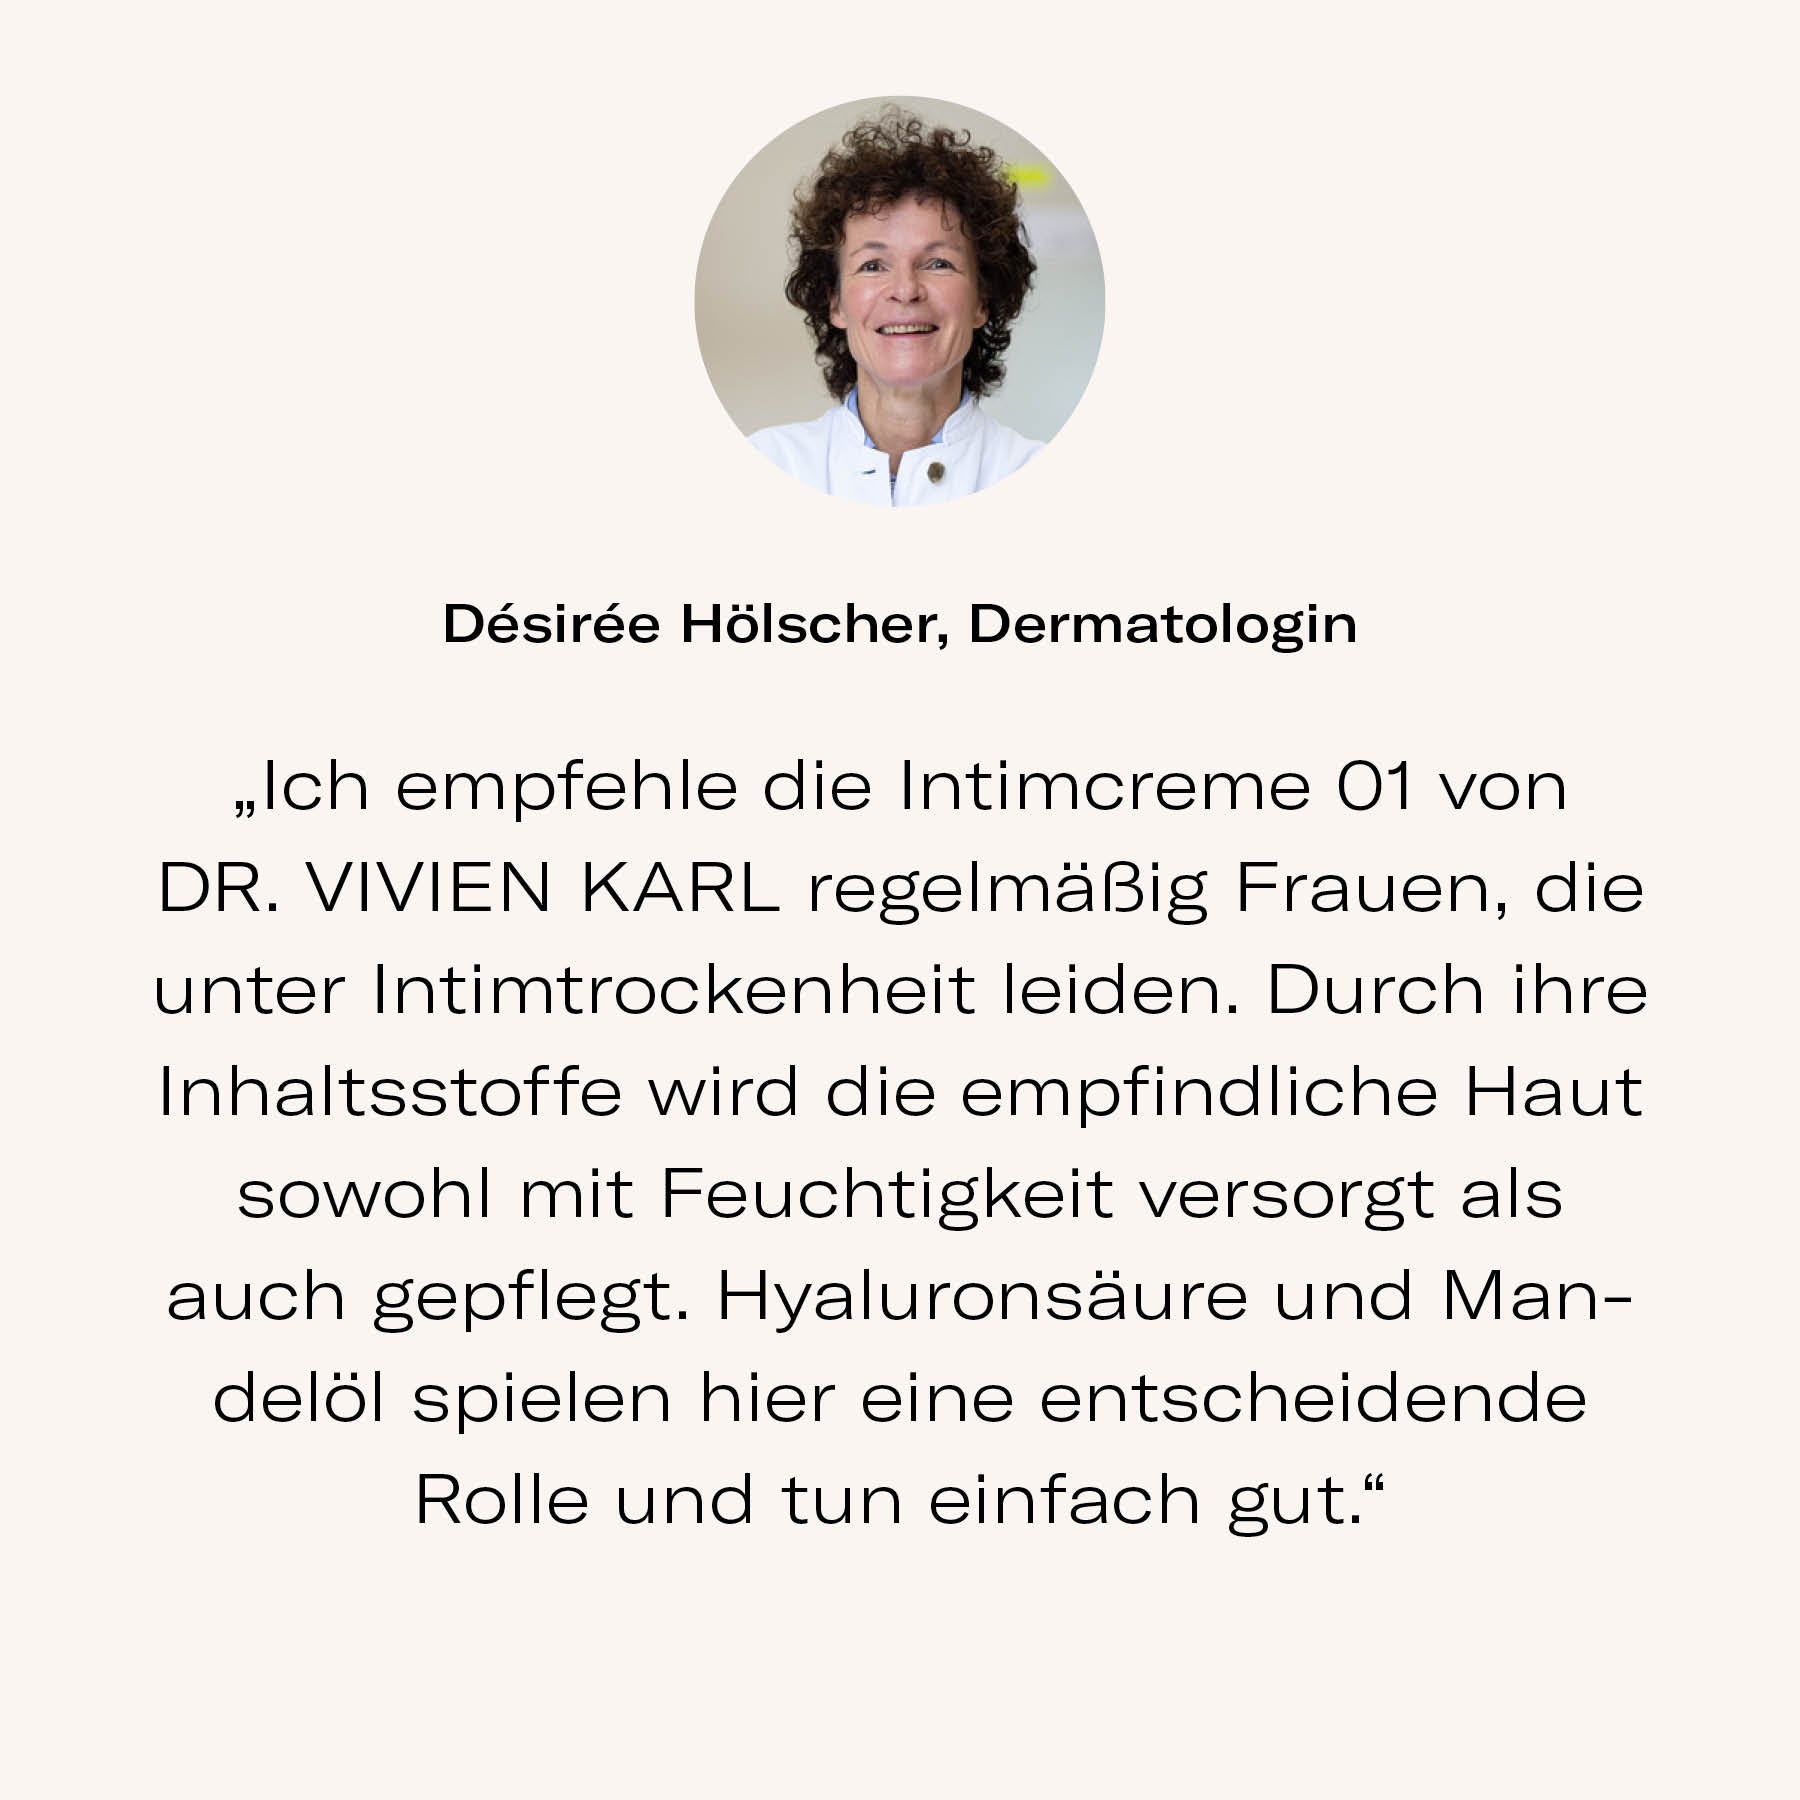 Dermatologin Désirée Hölscher empfiehlt Intimcreme 01 von DR. VIVIEN KARL